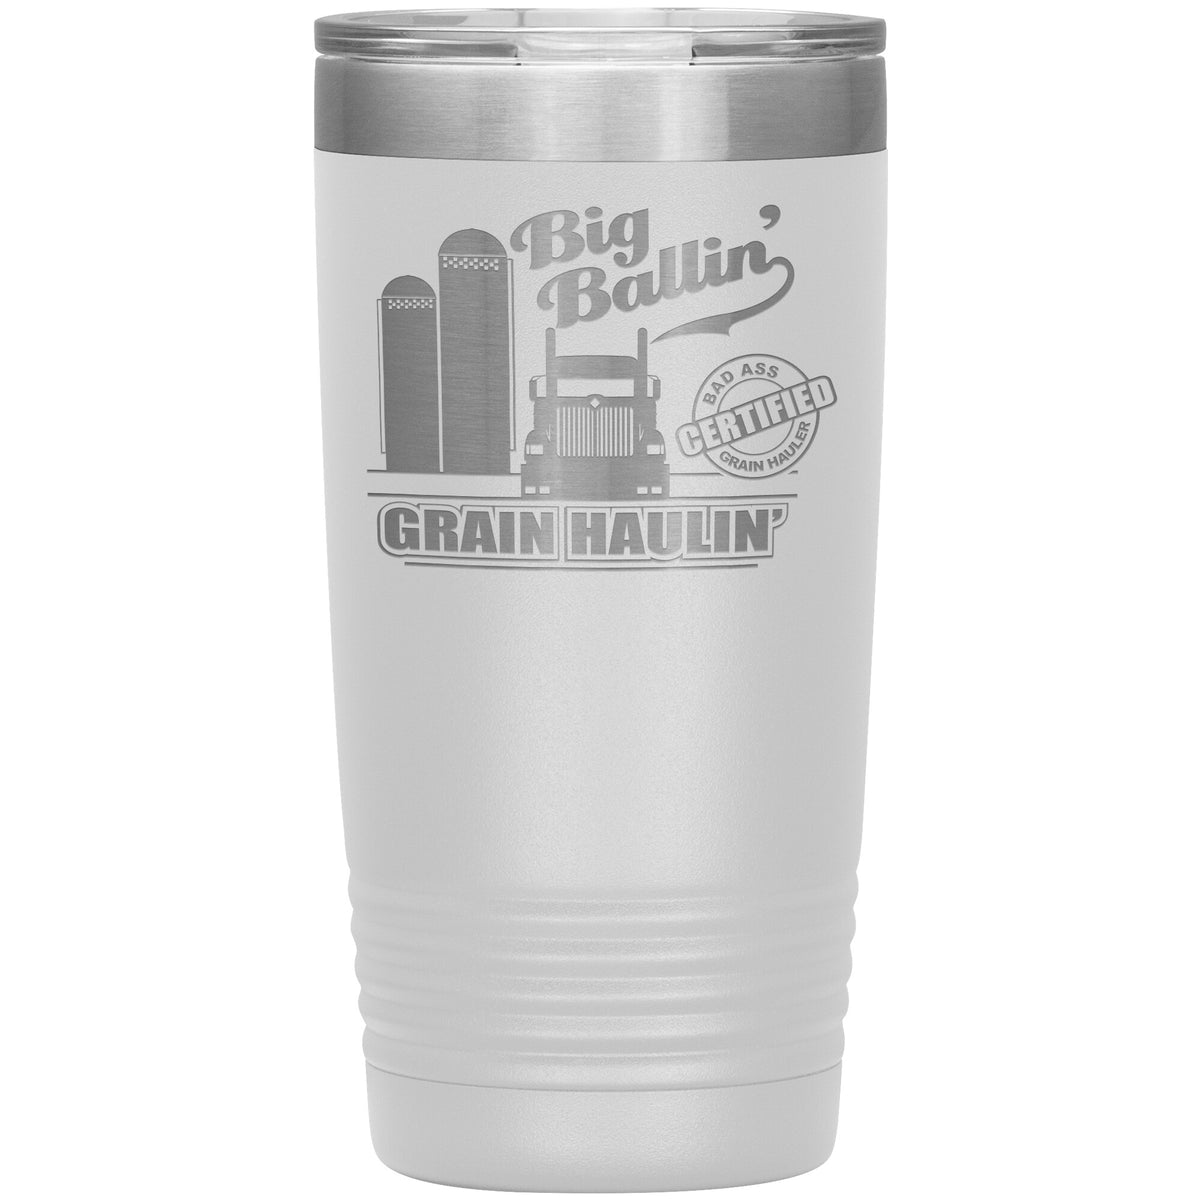 Big Ballin' Grain Haulin' 9900 20oz Tumbler